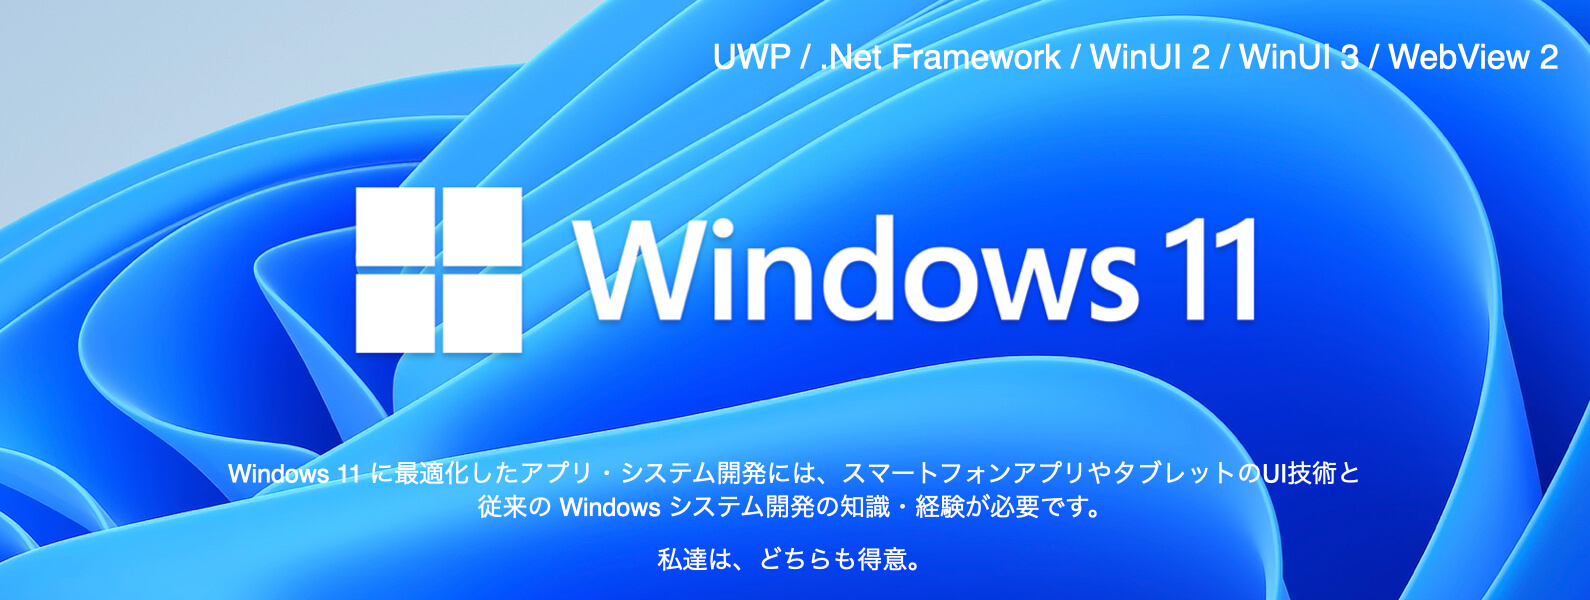 Windows 10 アプリ開発